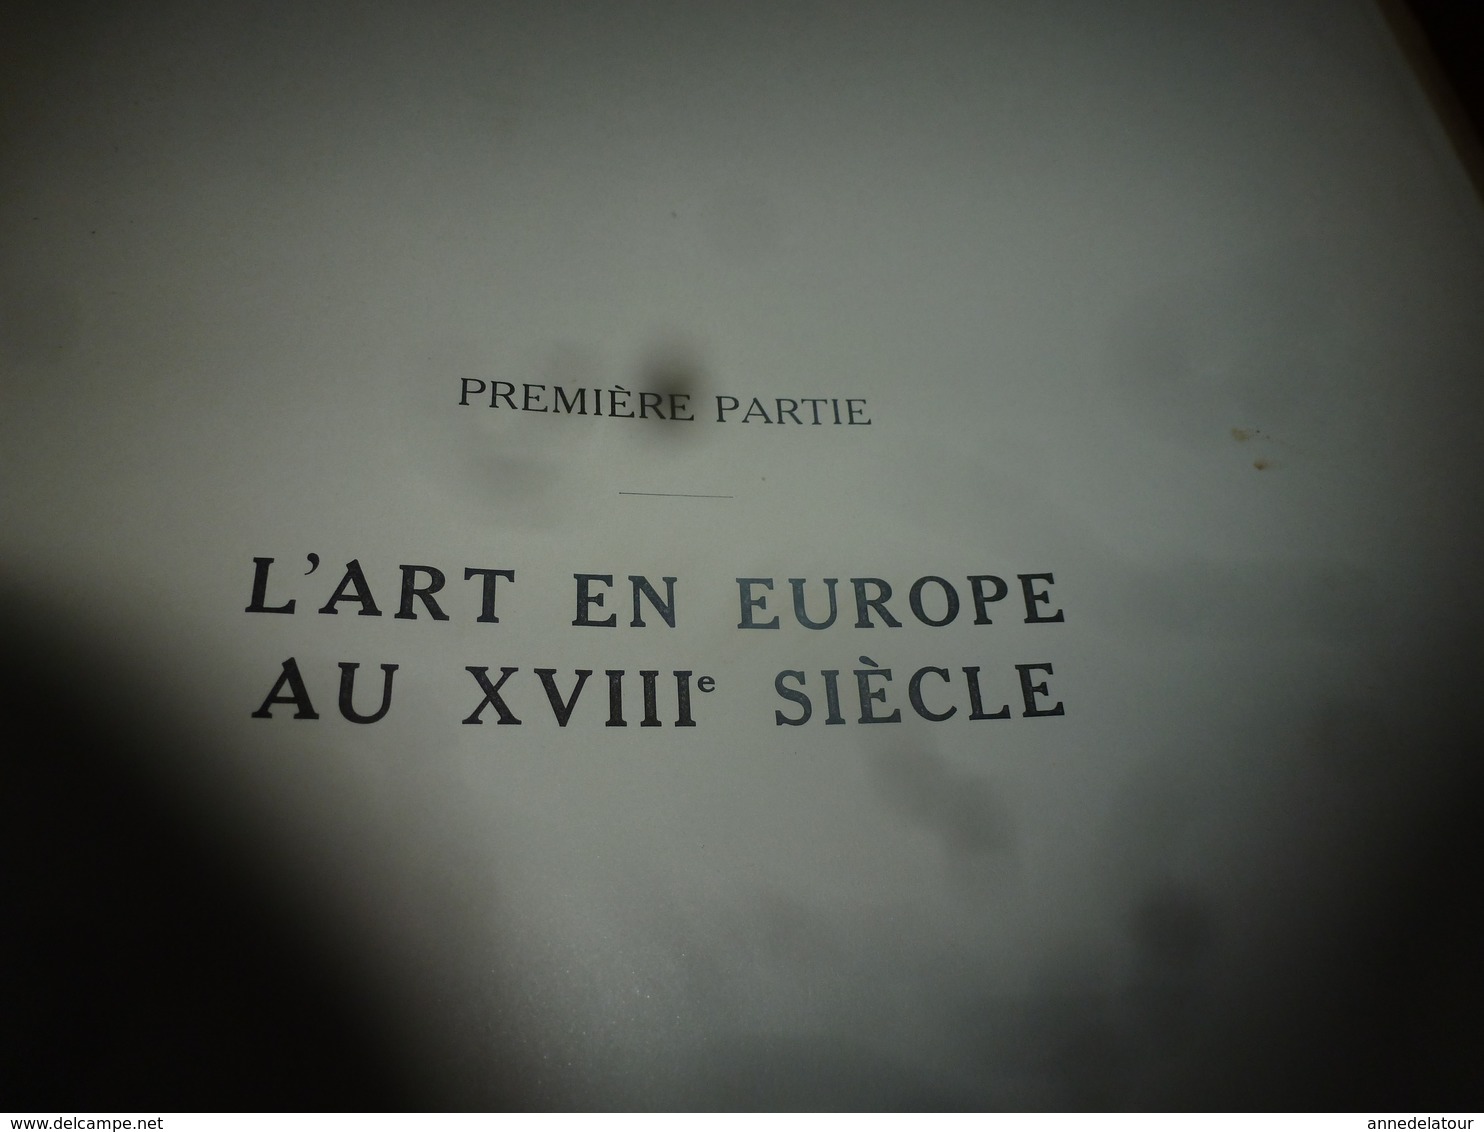 1938 IMPORTANT livre sur L'HISTOIRE de L'ART en Europe au 18ème siècle , tome 4 - nombreuses photos par Giraudon,etc